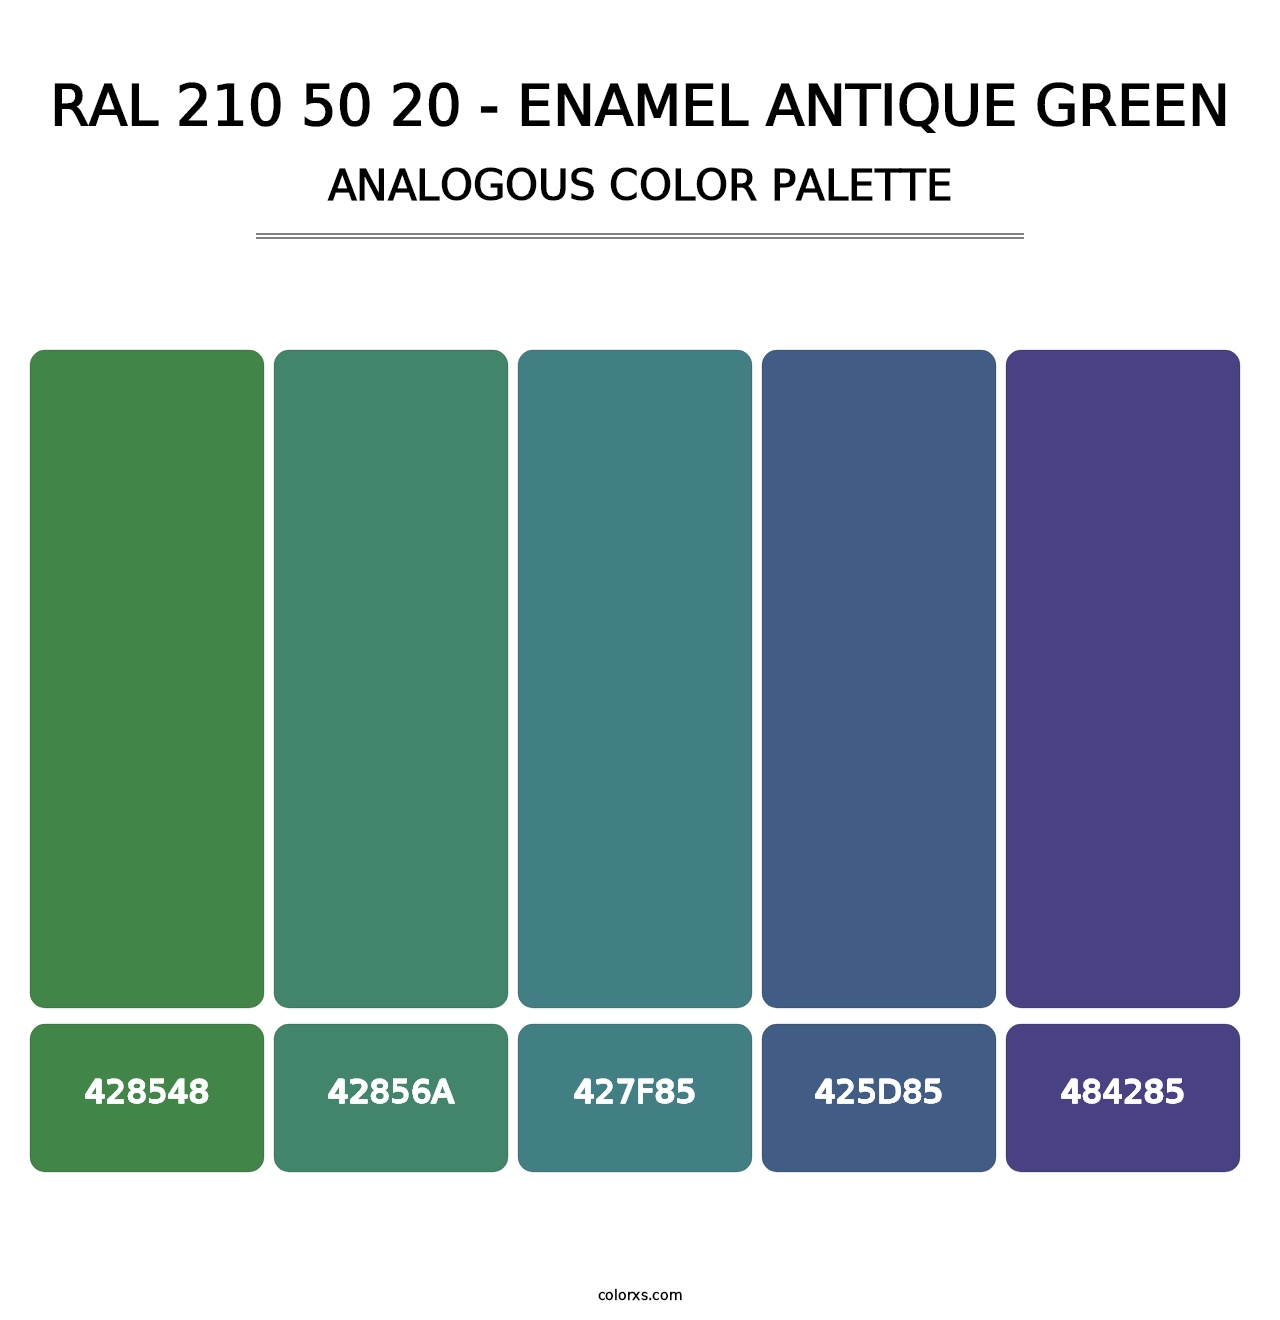 RAL 210 50 20 - Enamel Antique Green - Analogous Color Palette